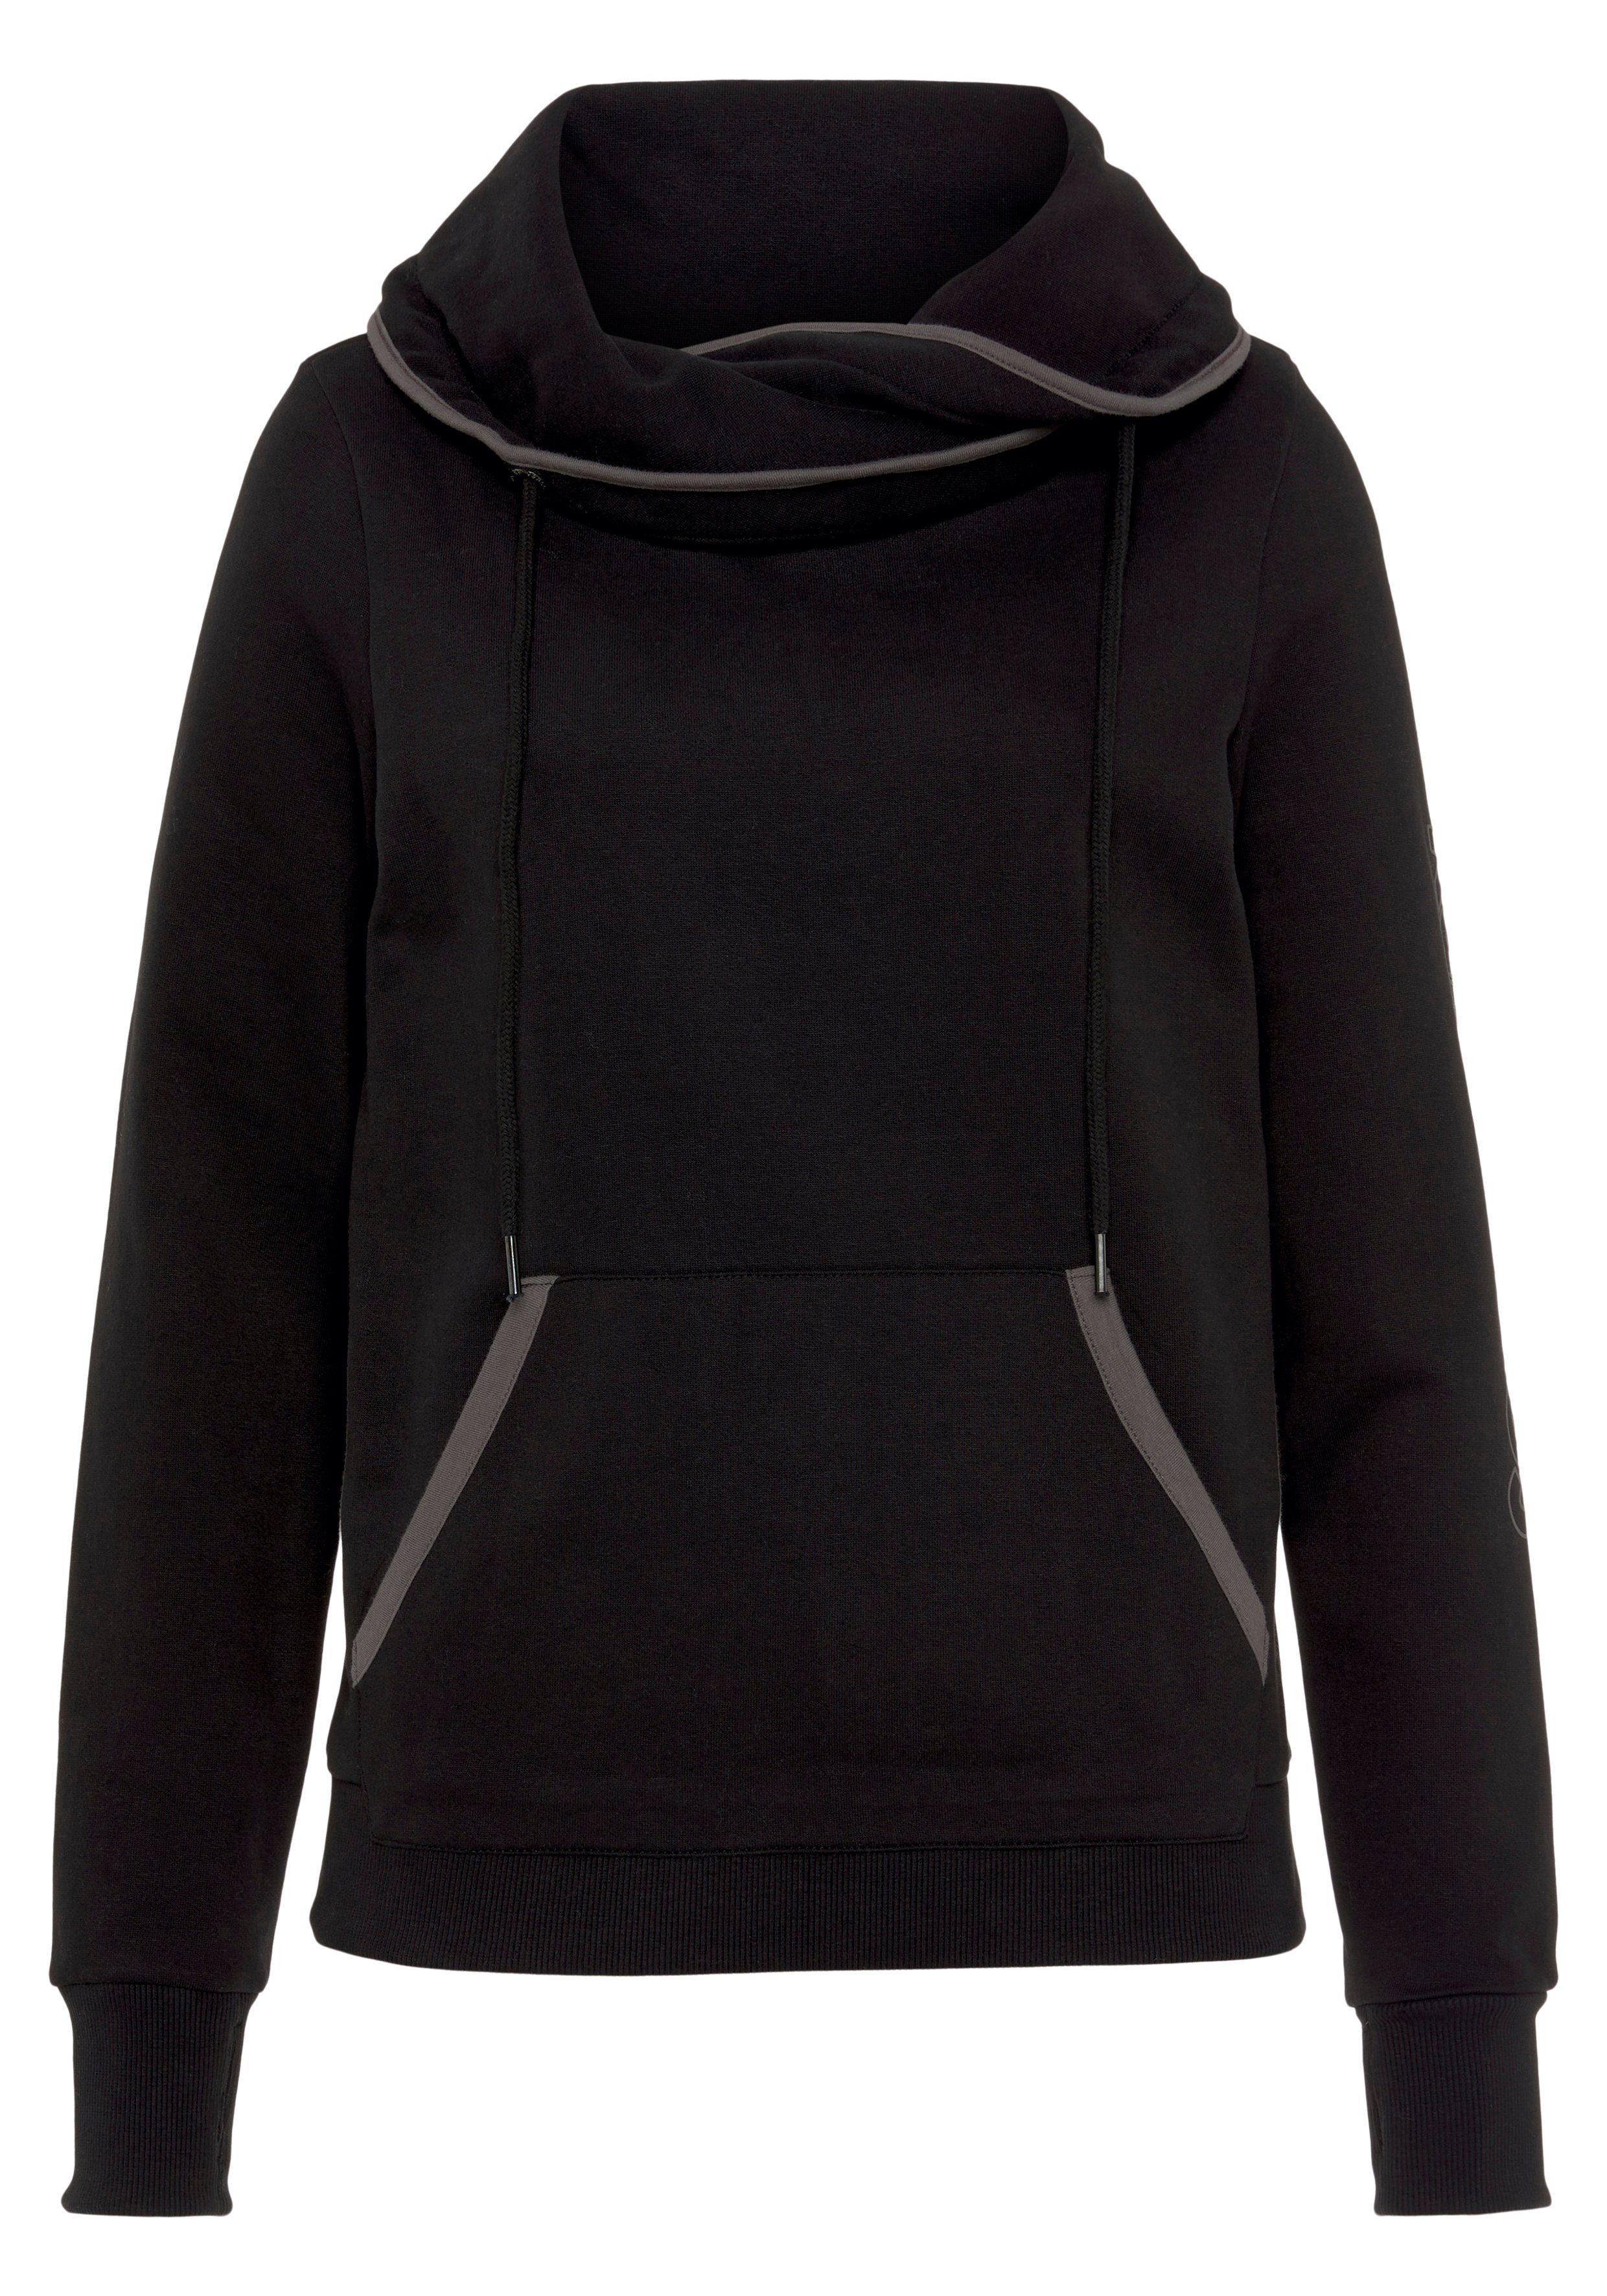 KangaROOS Sweatshirt -NEUE Stehkragen KOLLEKTION schwarz-grau mit